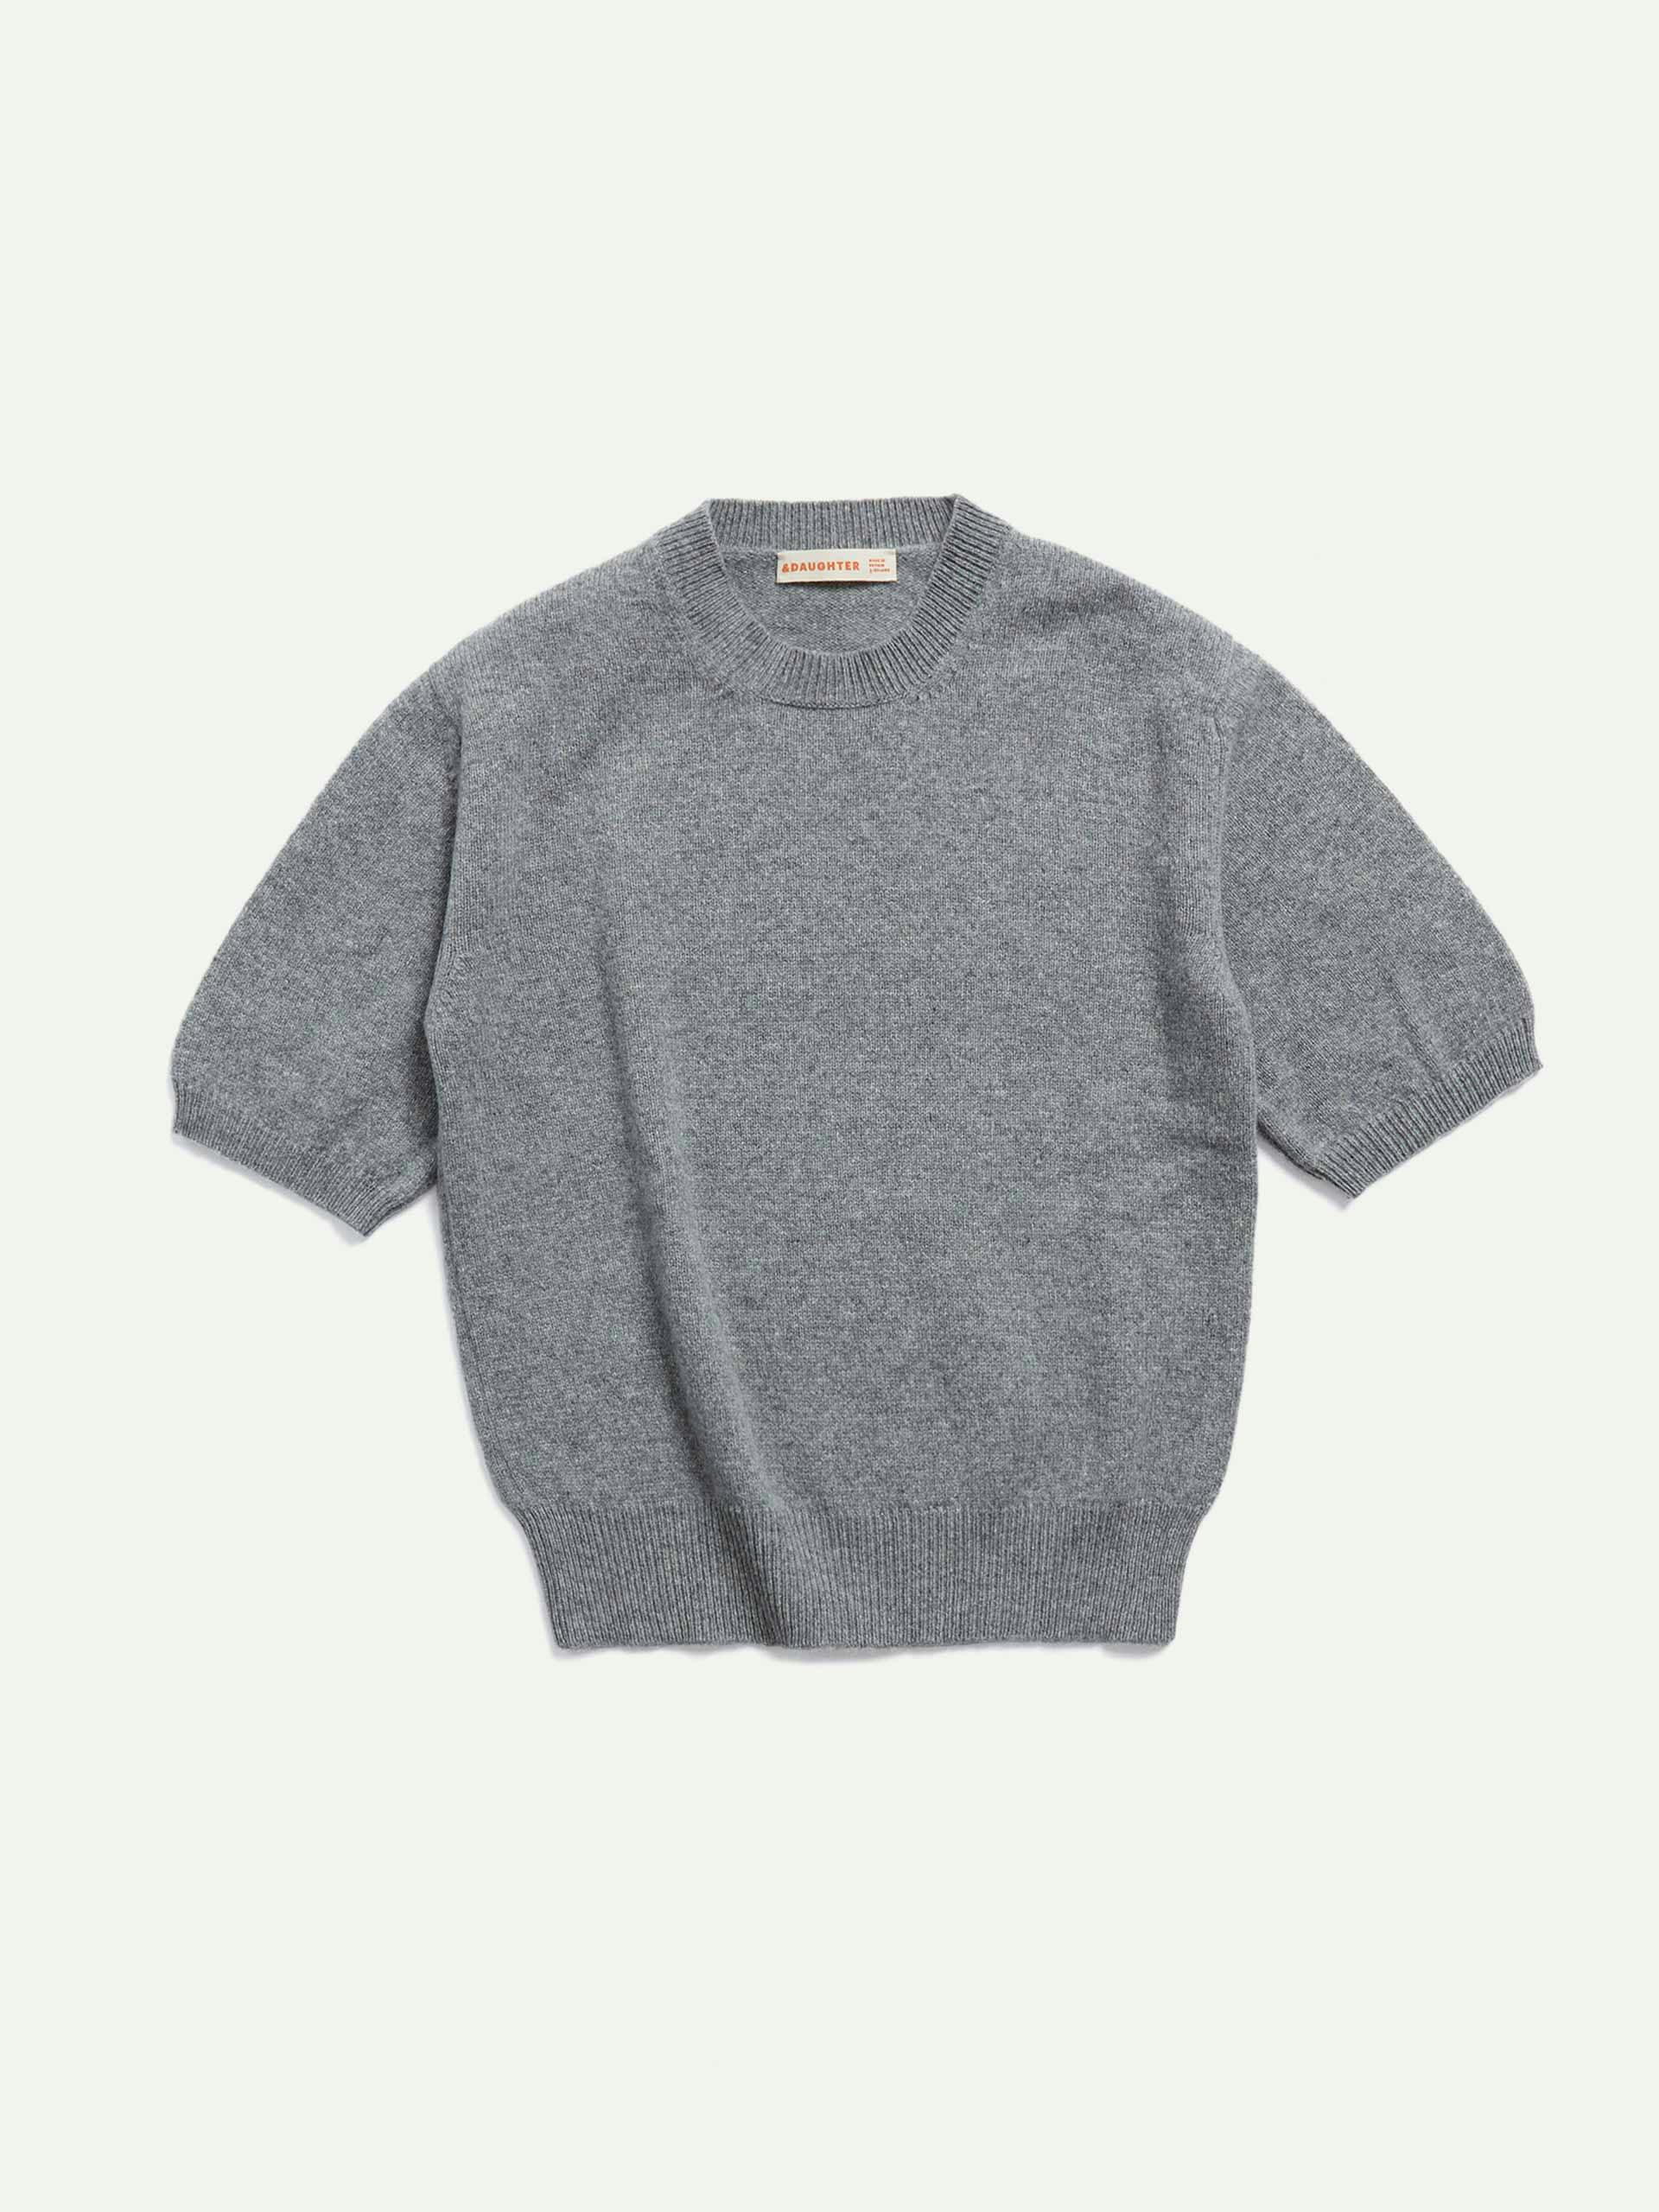 Wicklow Geelong knit t-shirt